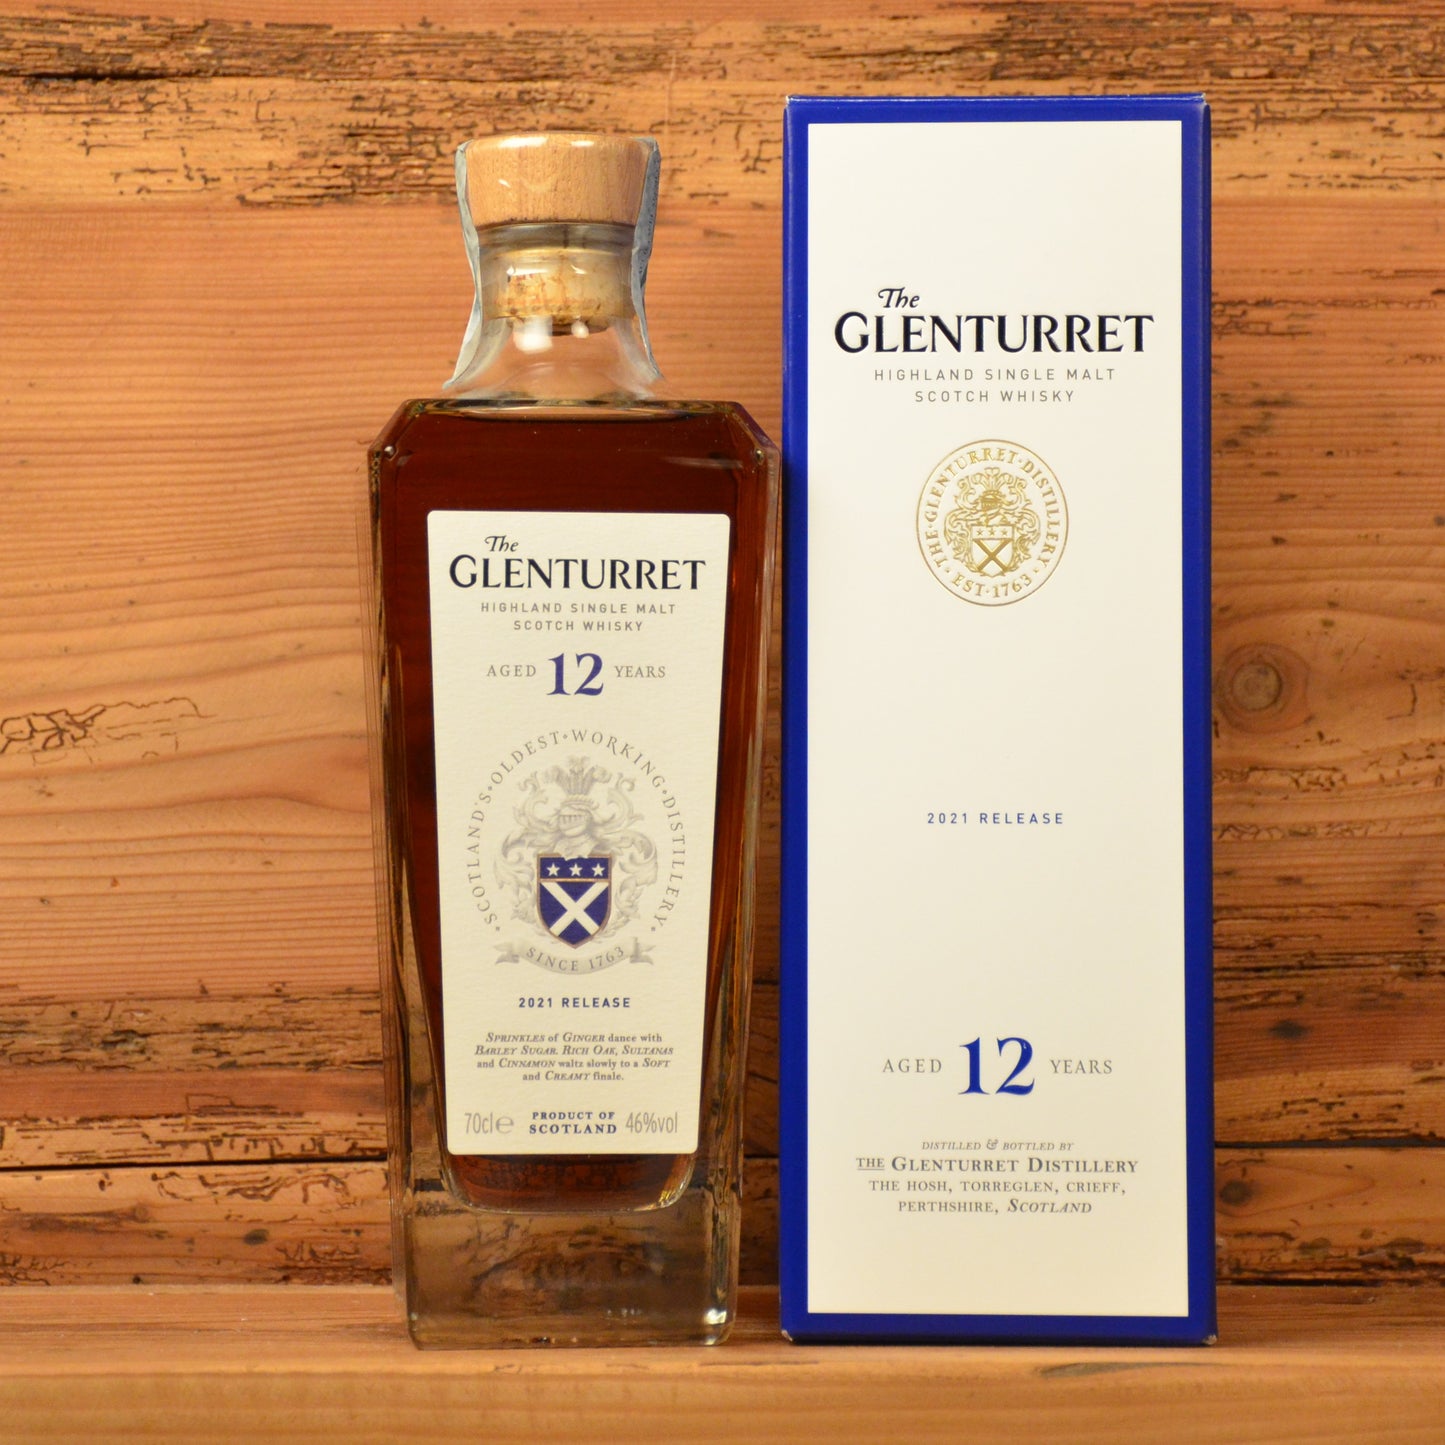 Whisky Scozia Single Malt Glenturret
12 YO